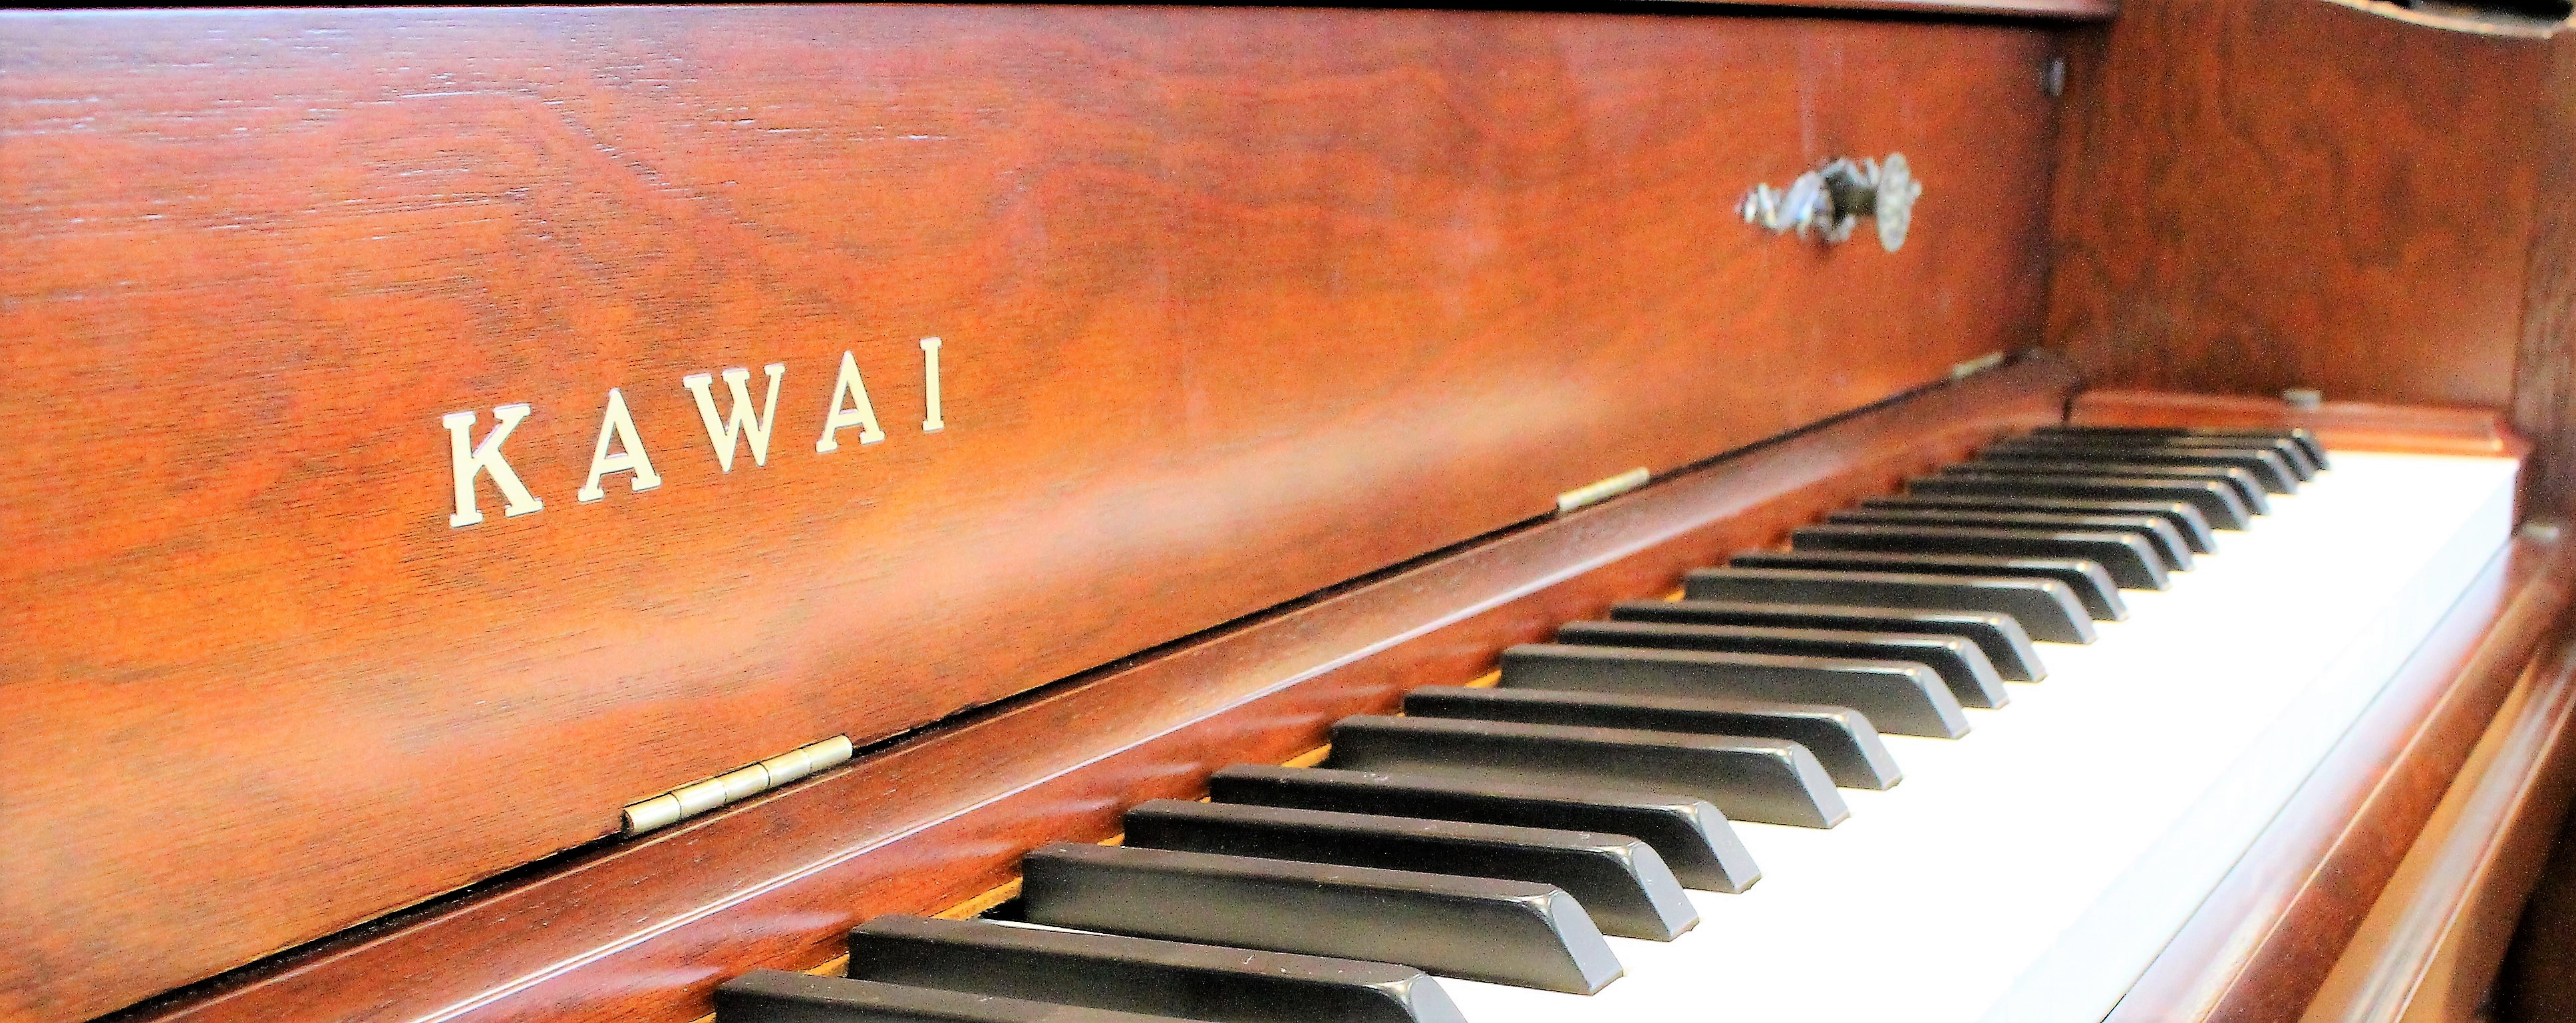 創業90余年の河合楽器。世界一のピアノをつくりたいという創業者河合小市の熱い思いが会社の夢のはじまりでした。「日本のピアノの父」と称された創業者の河合小市氏は日本で初めてピアノを作った技術者の一人です。 時に、ピアノの心臓部とも言われるアクションの国産化を図った先駆者でもあり、以来3代続くKAWAI […]